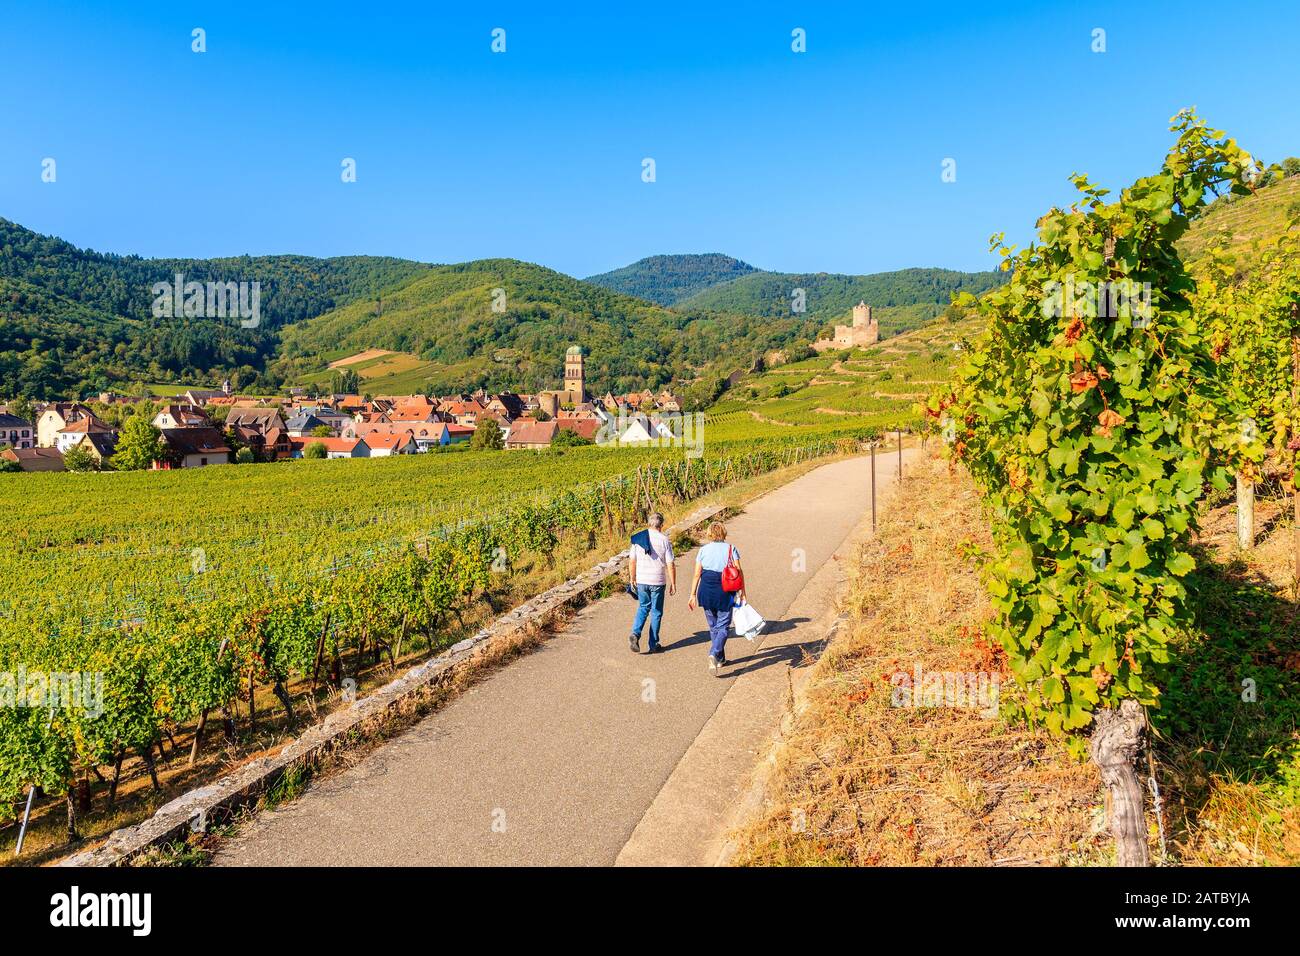 Un par de personas no identificadas que caminan entre viñedos verdes hasta el pueblo medieval de Kaysersberg en la Ruta del vino de Alsacia, Francia Foto de stock